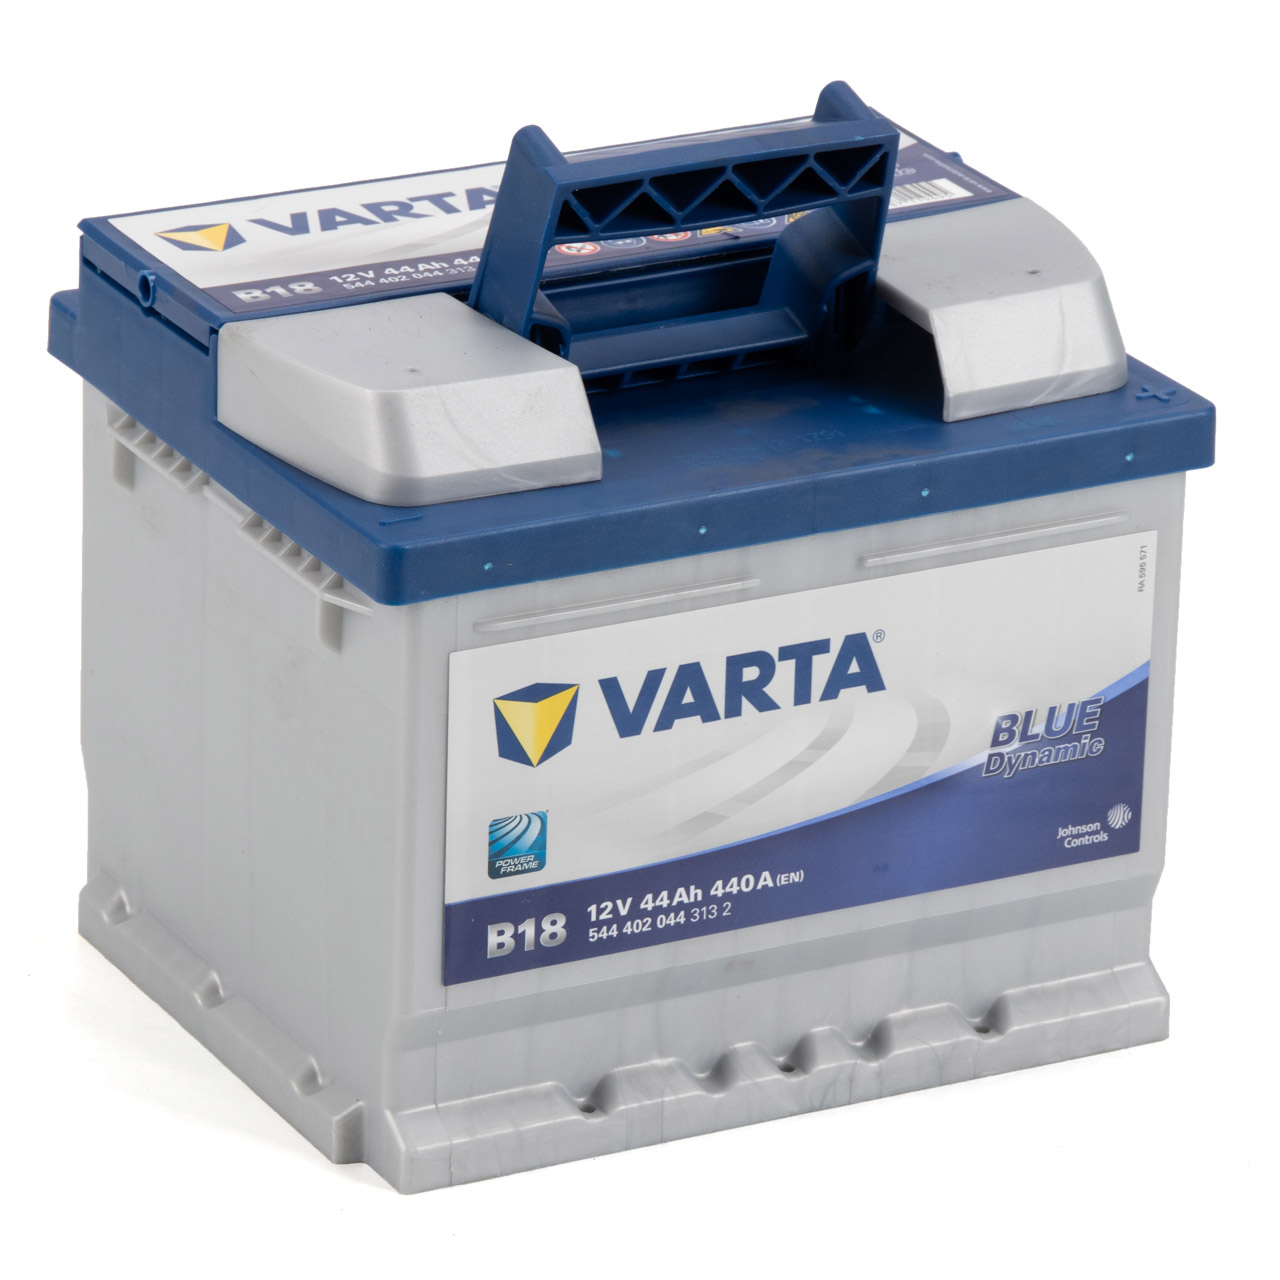 VARTA Starterbatterien / Autobatterien - 5444020443132 